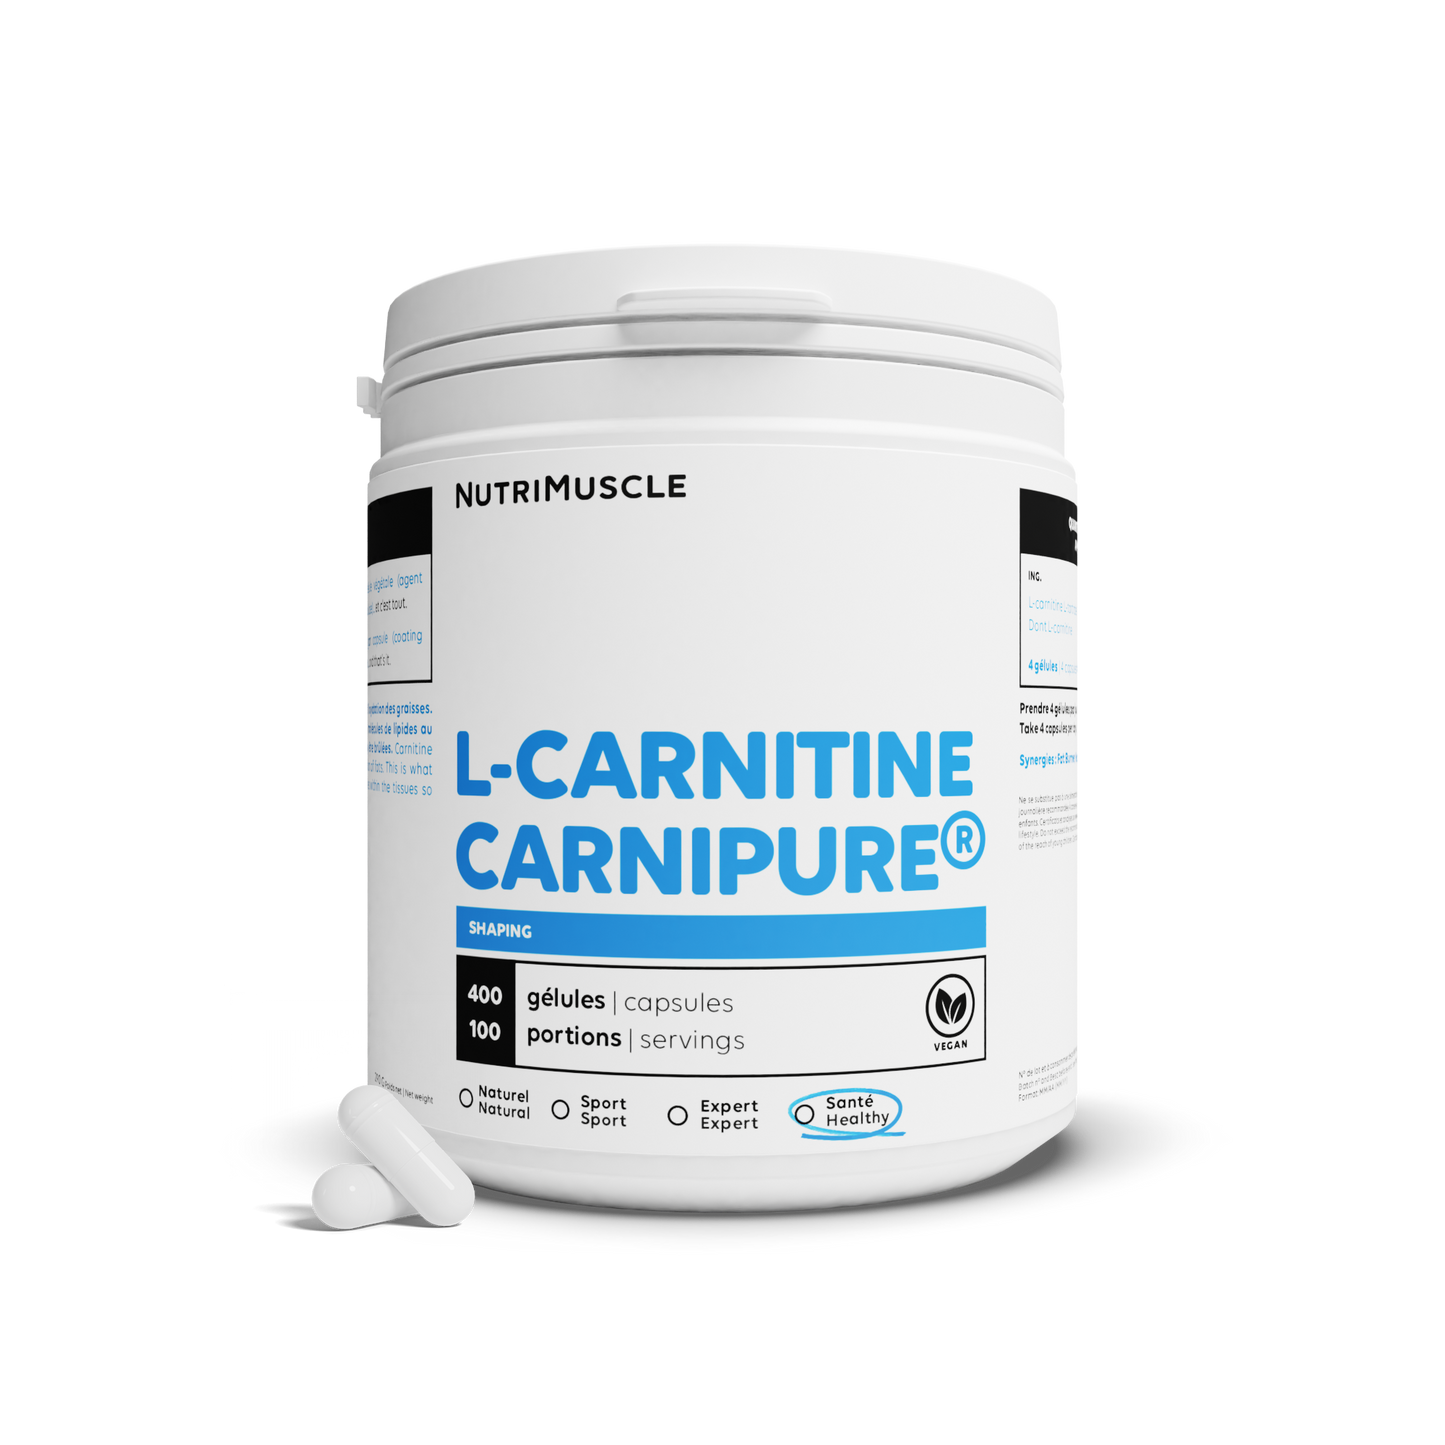 Carnitine Carnipure® in capsules